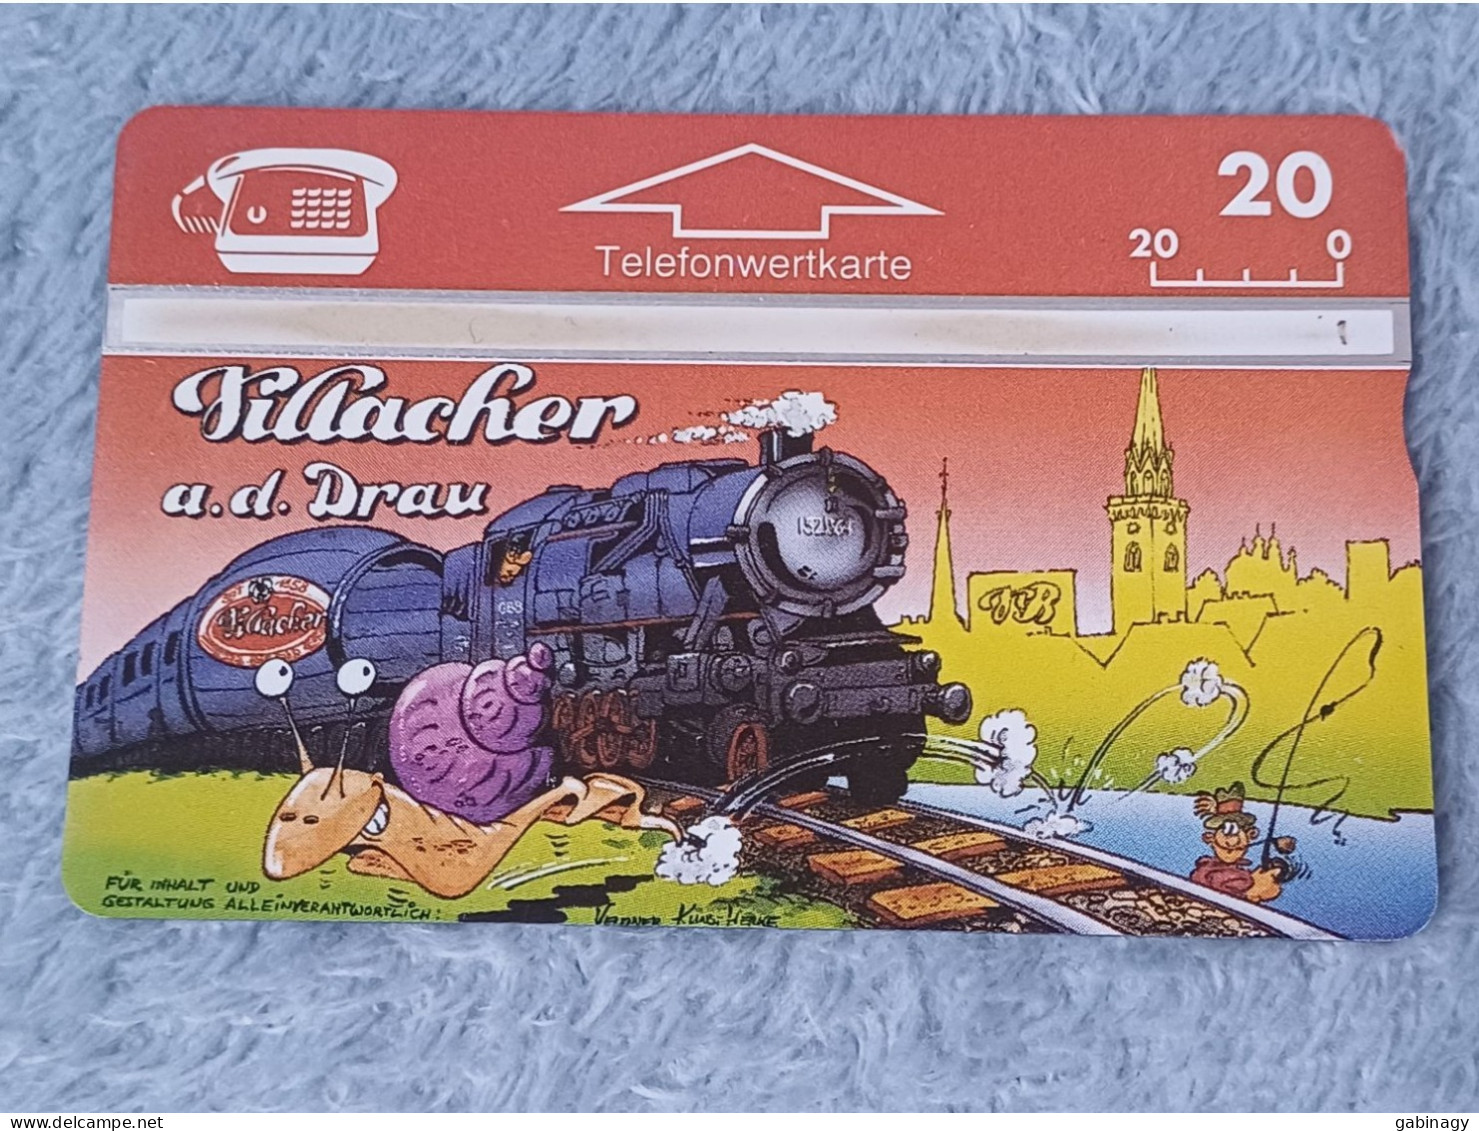 TRAIN - AUSTRIA - P183 - Villacher A.d. Drau - Steamtrain - SNAIL - CARTOON - 700EX. - Eisenbahnen